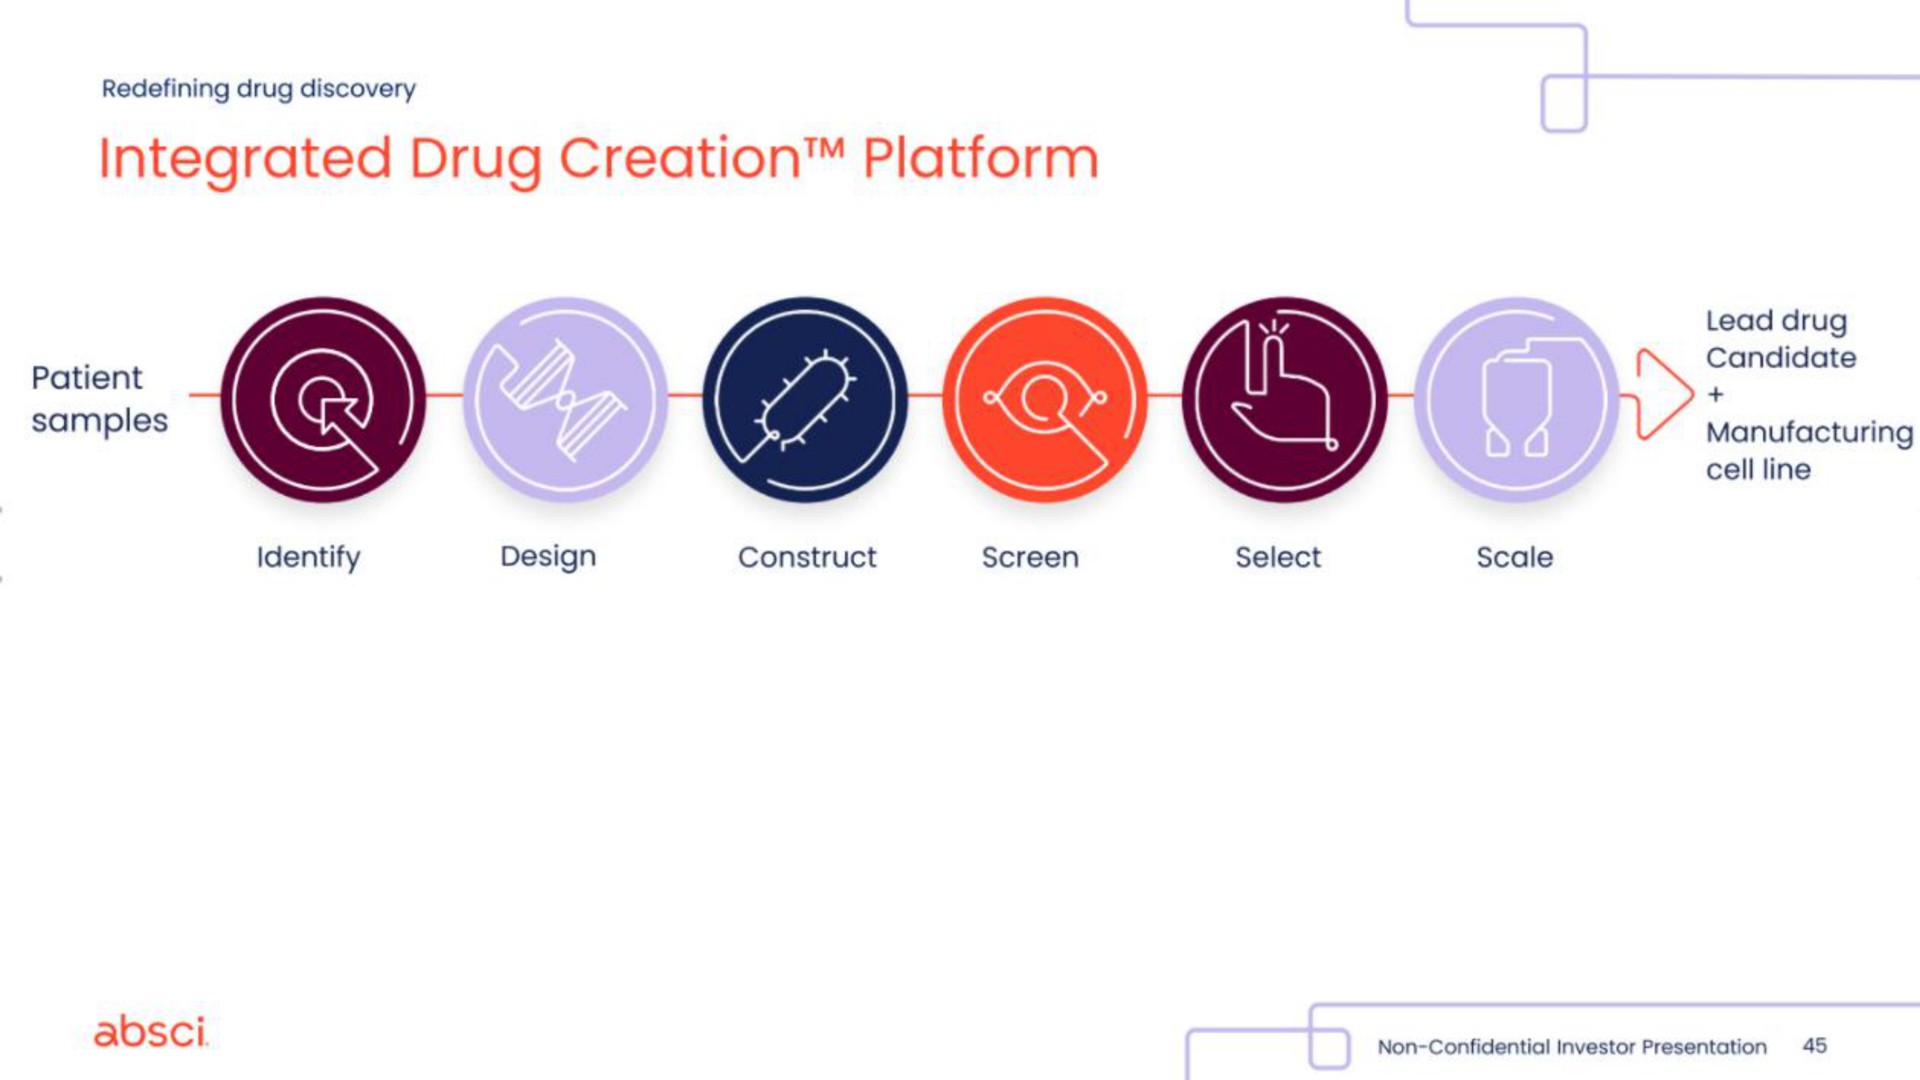 integrated drug creation platform | Absci